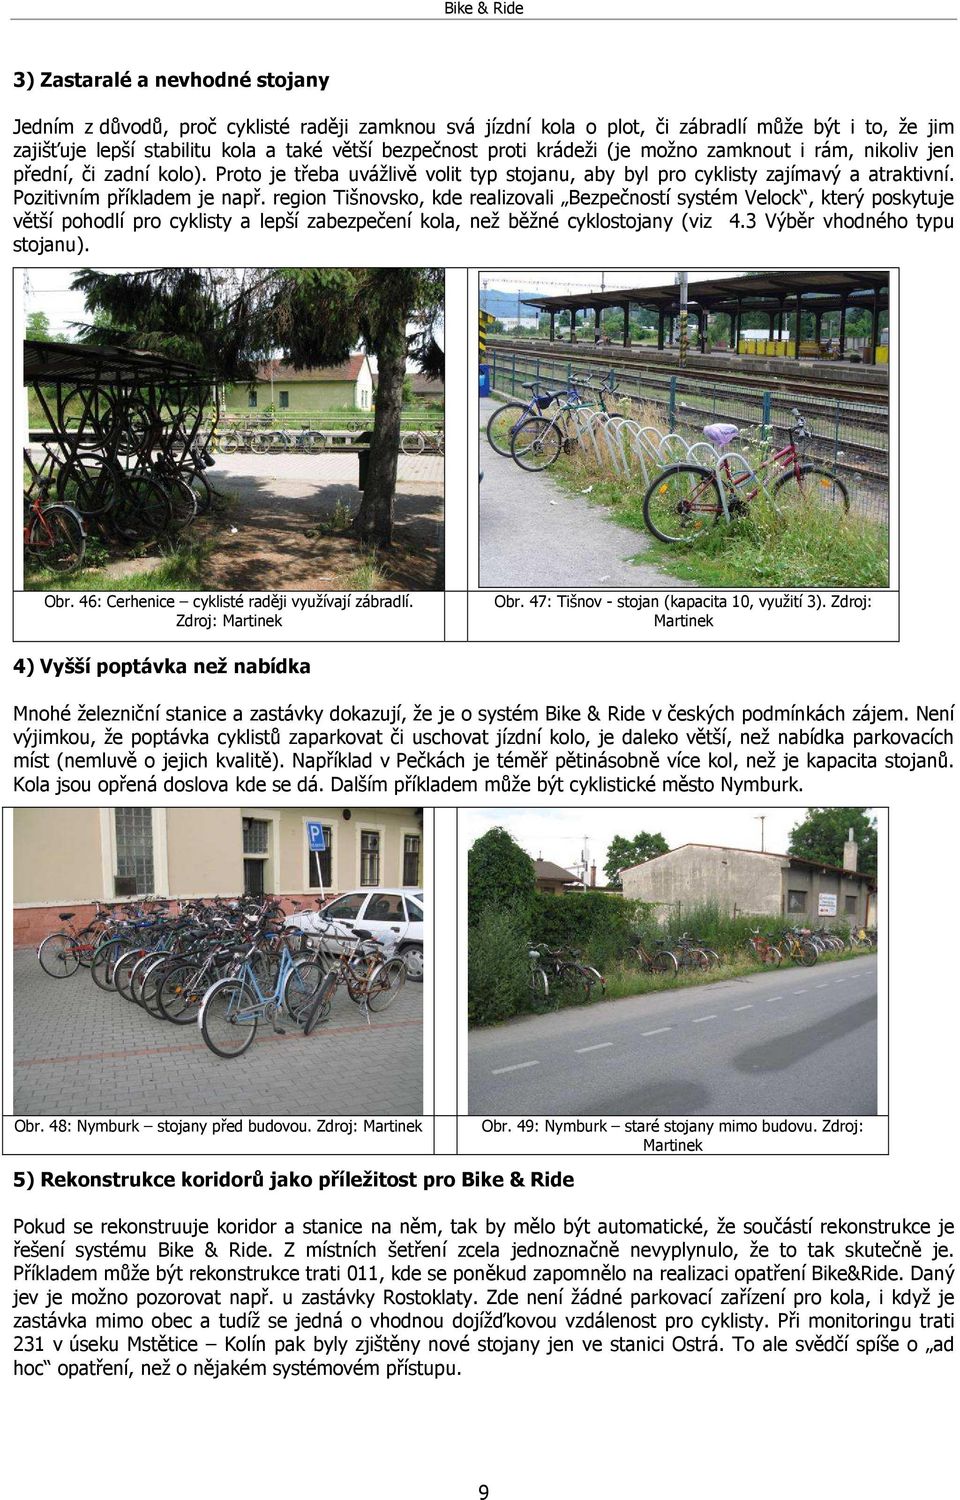 region Tišnovsko, kde realizovali Bezpečností systém Velock, který poskytuje větší pohodlí pro cyklisty a lepší zabezpečení kola, než běžné cyklostojany (viz 4.3 Výběr vhodného typu stojanu). Obr.